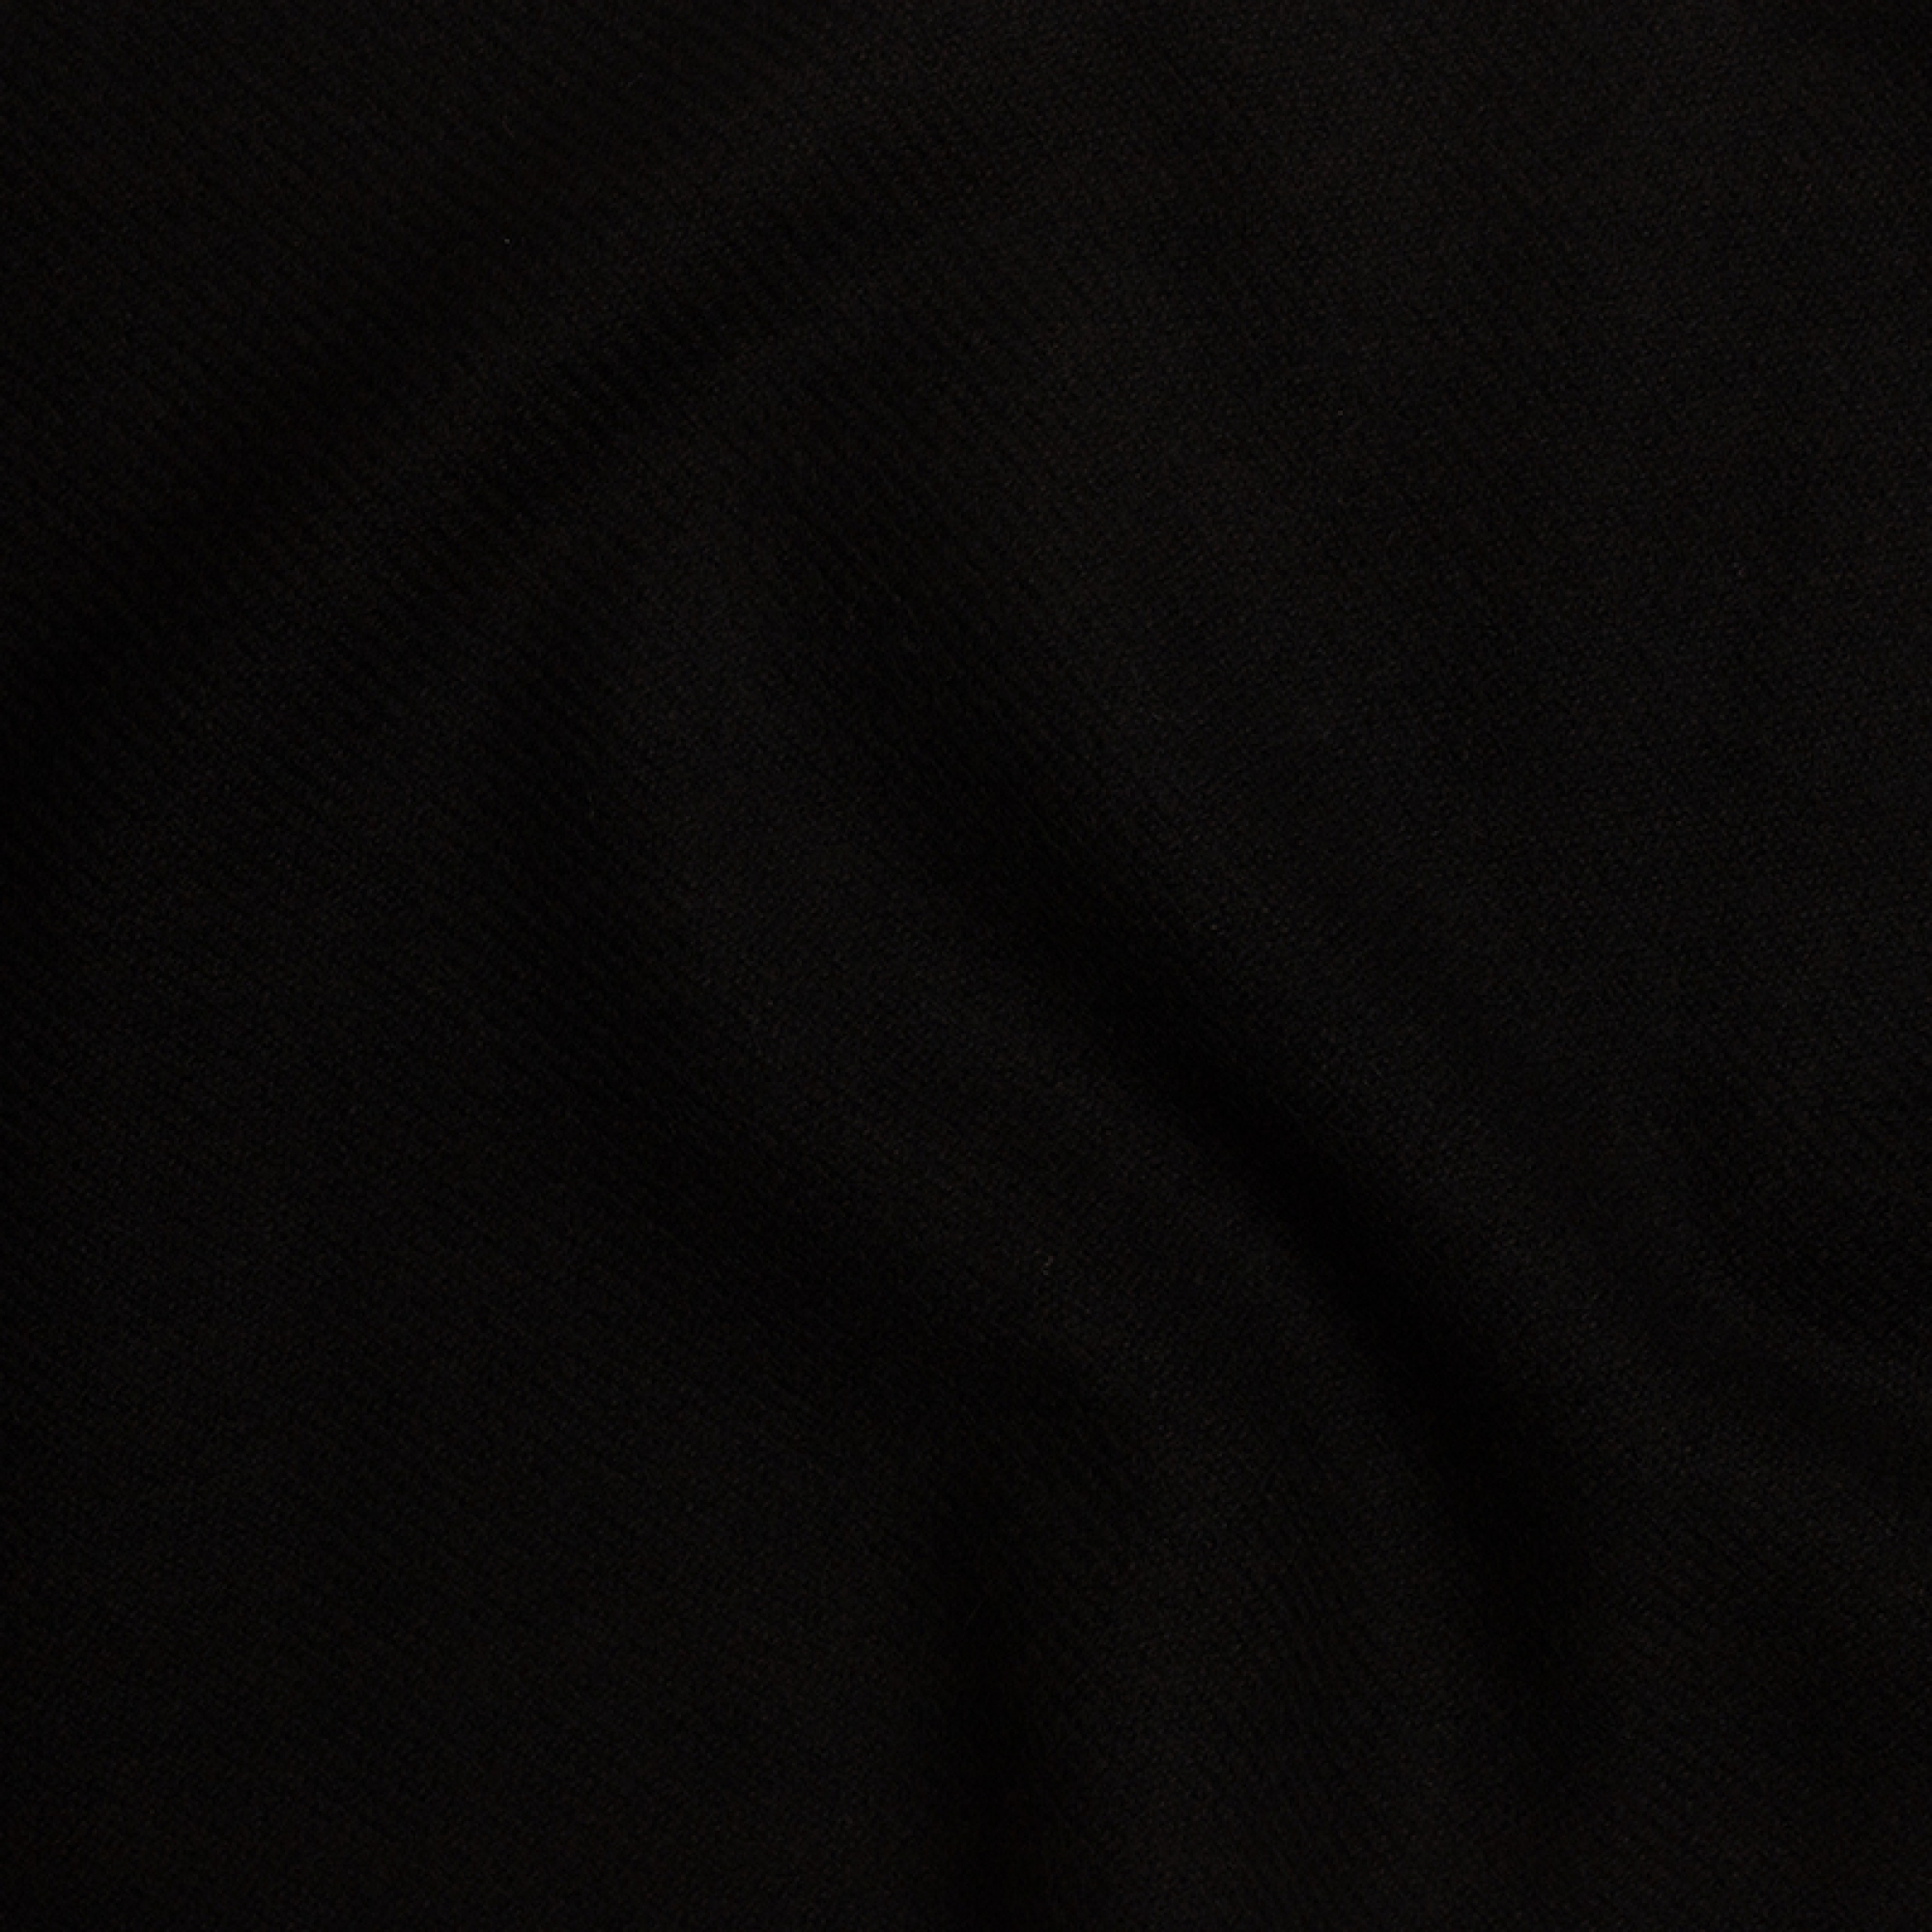 Cachemire accessoires couvertures plaids toodoo plain m 180 x 220 noir 180 x 220 cm